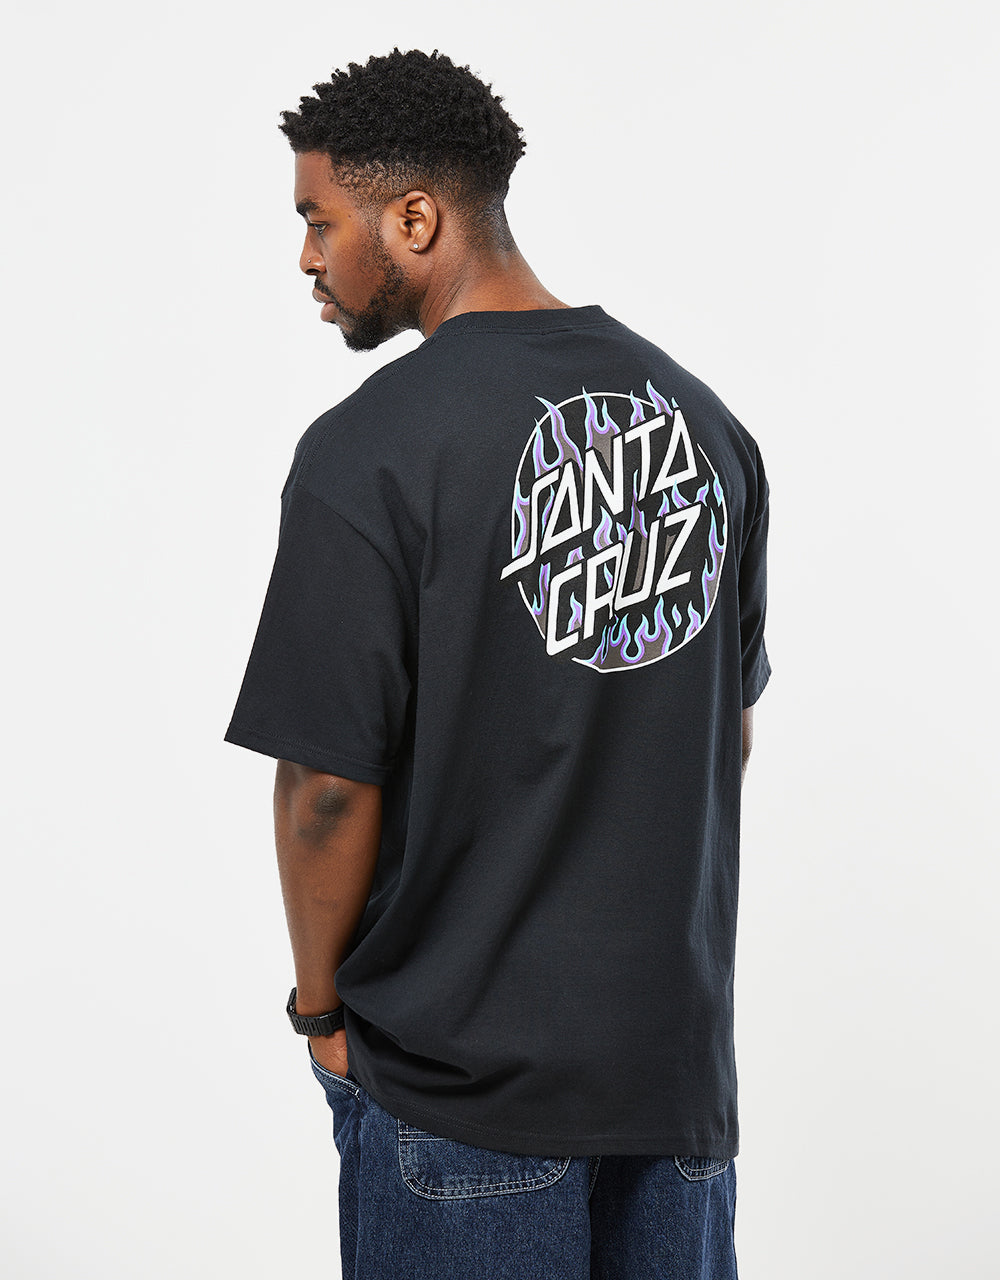 Santa Cruz x Thrasher Flame Dot T-Shirt - Black